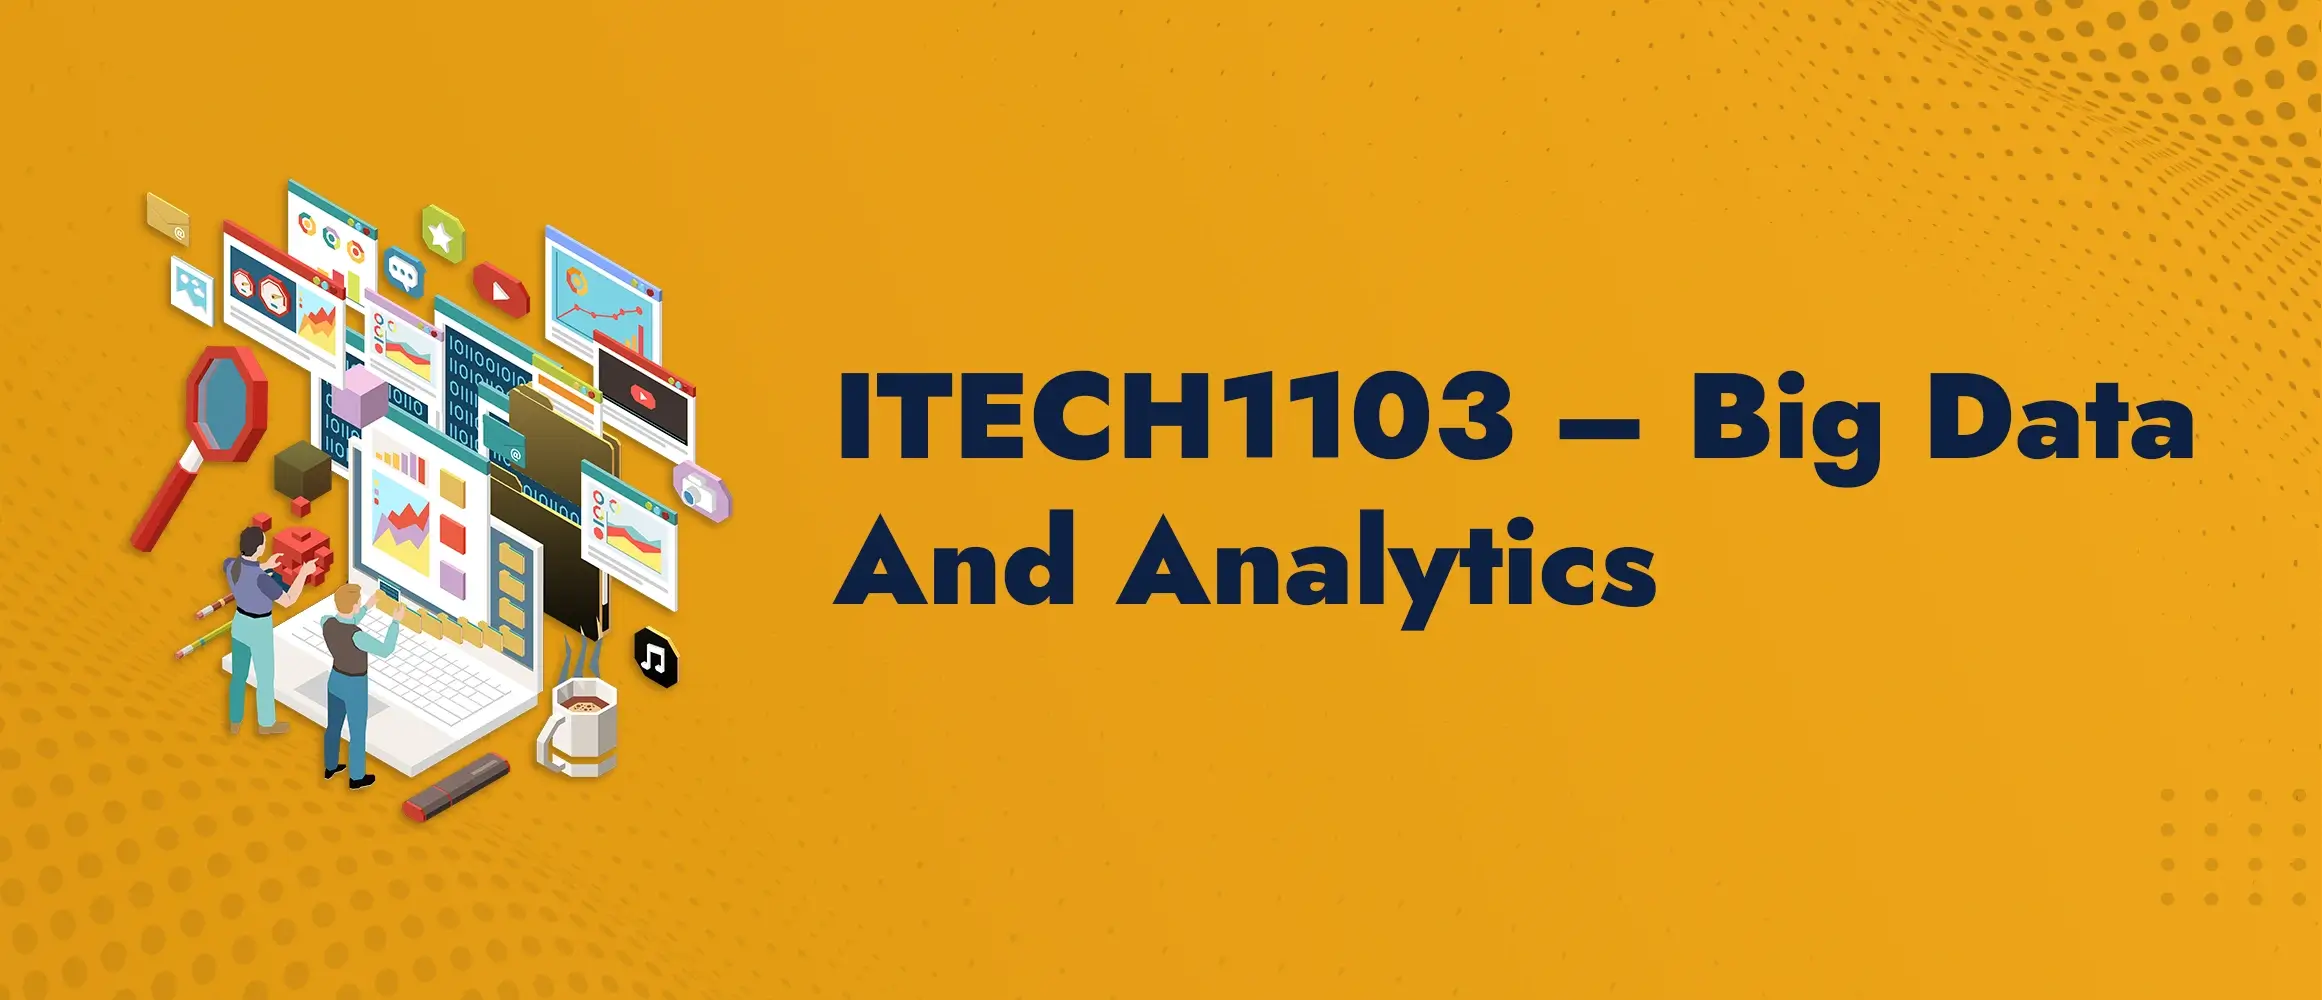 ITech1103 Big Data and Analytics